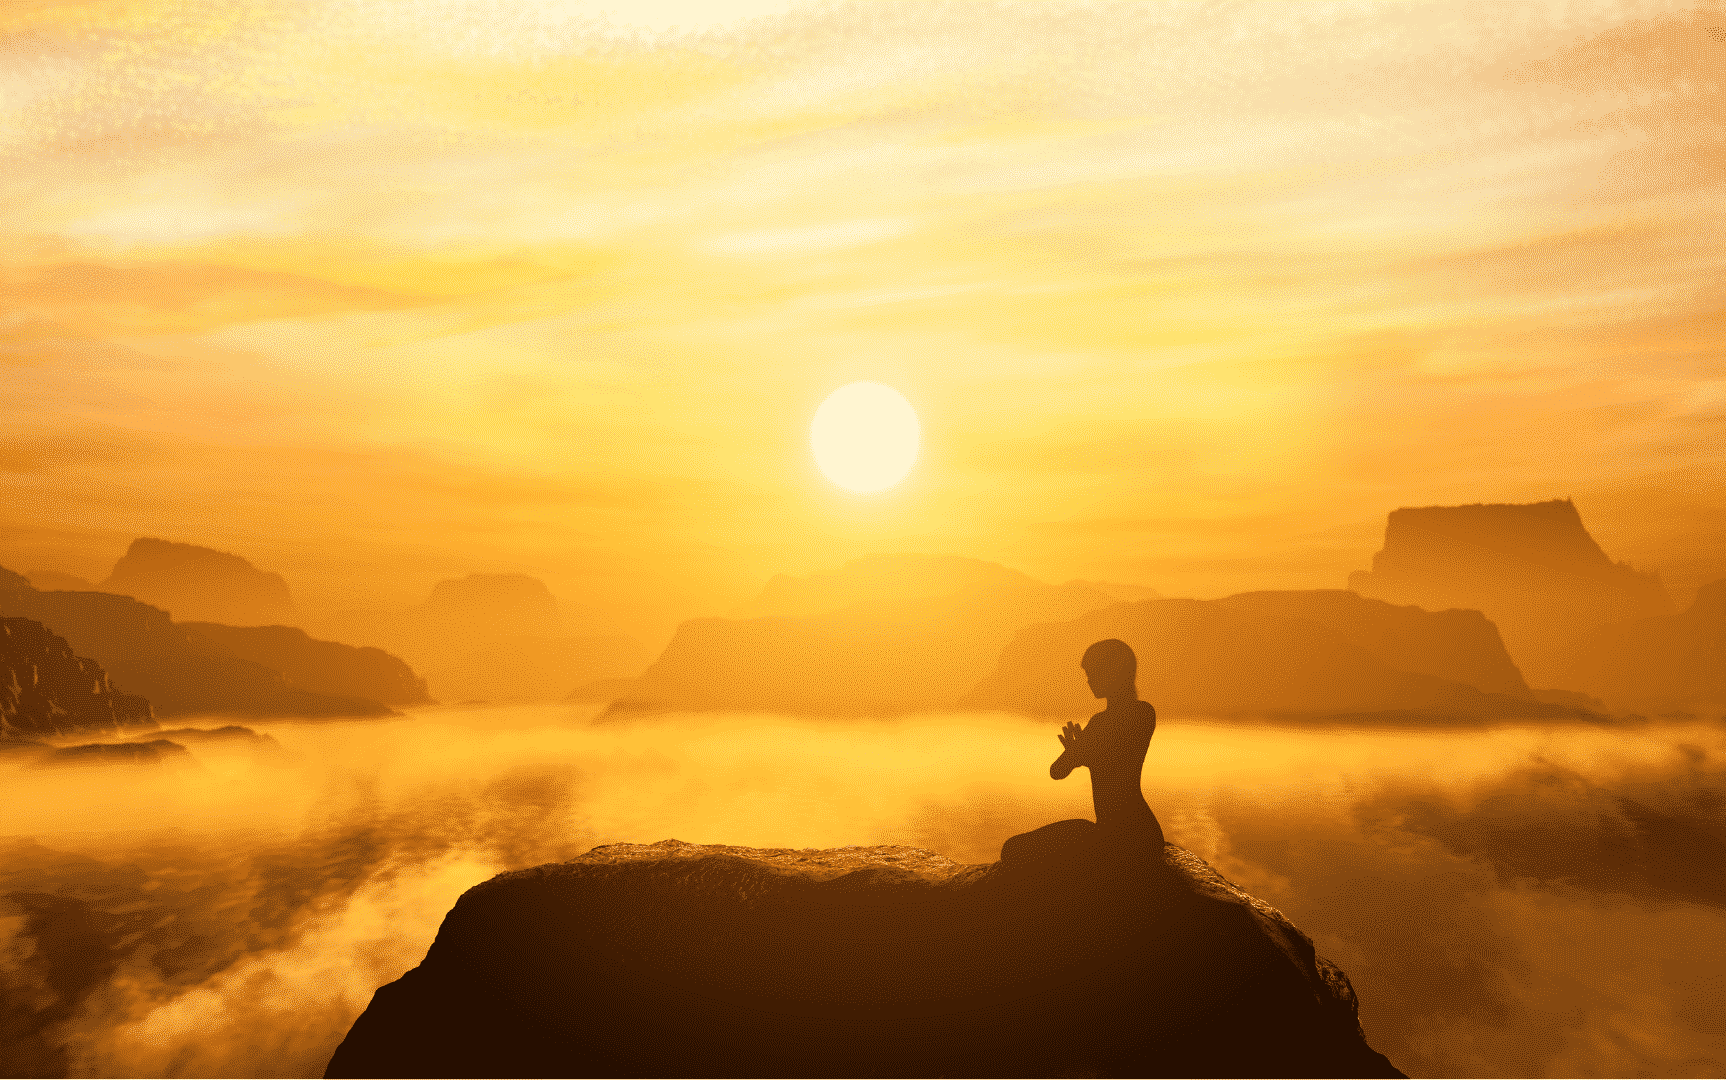 Uma pessoa meditando em meio a um deserto montanhoso. Ao fundo, um sol forte e nuvens com tons alaranjados. 